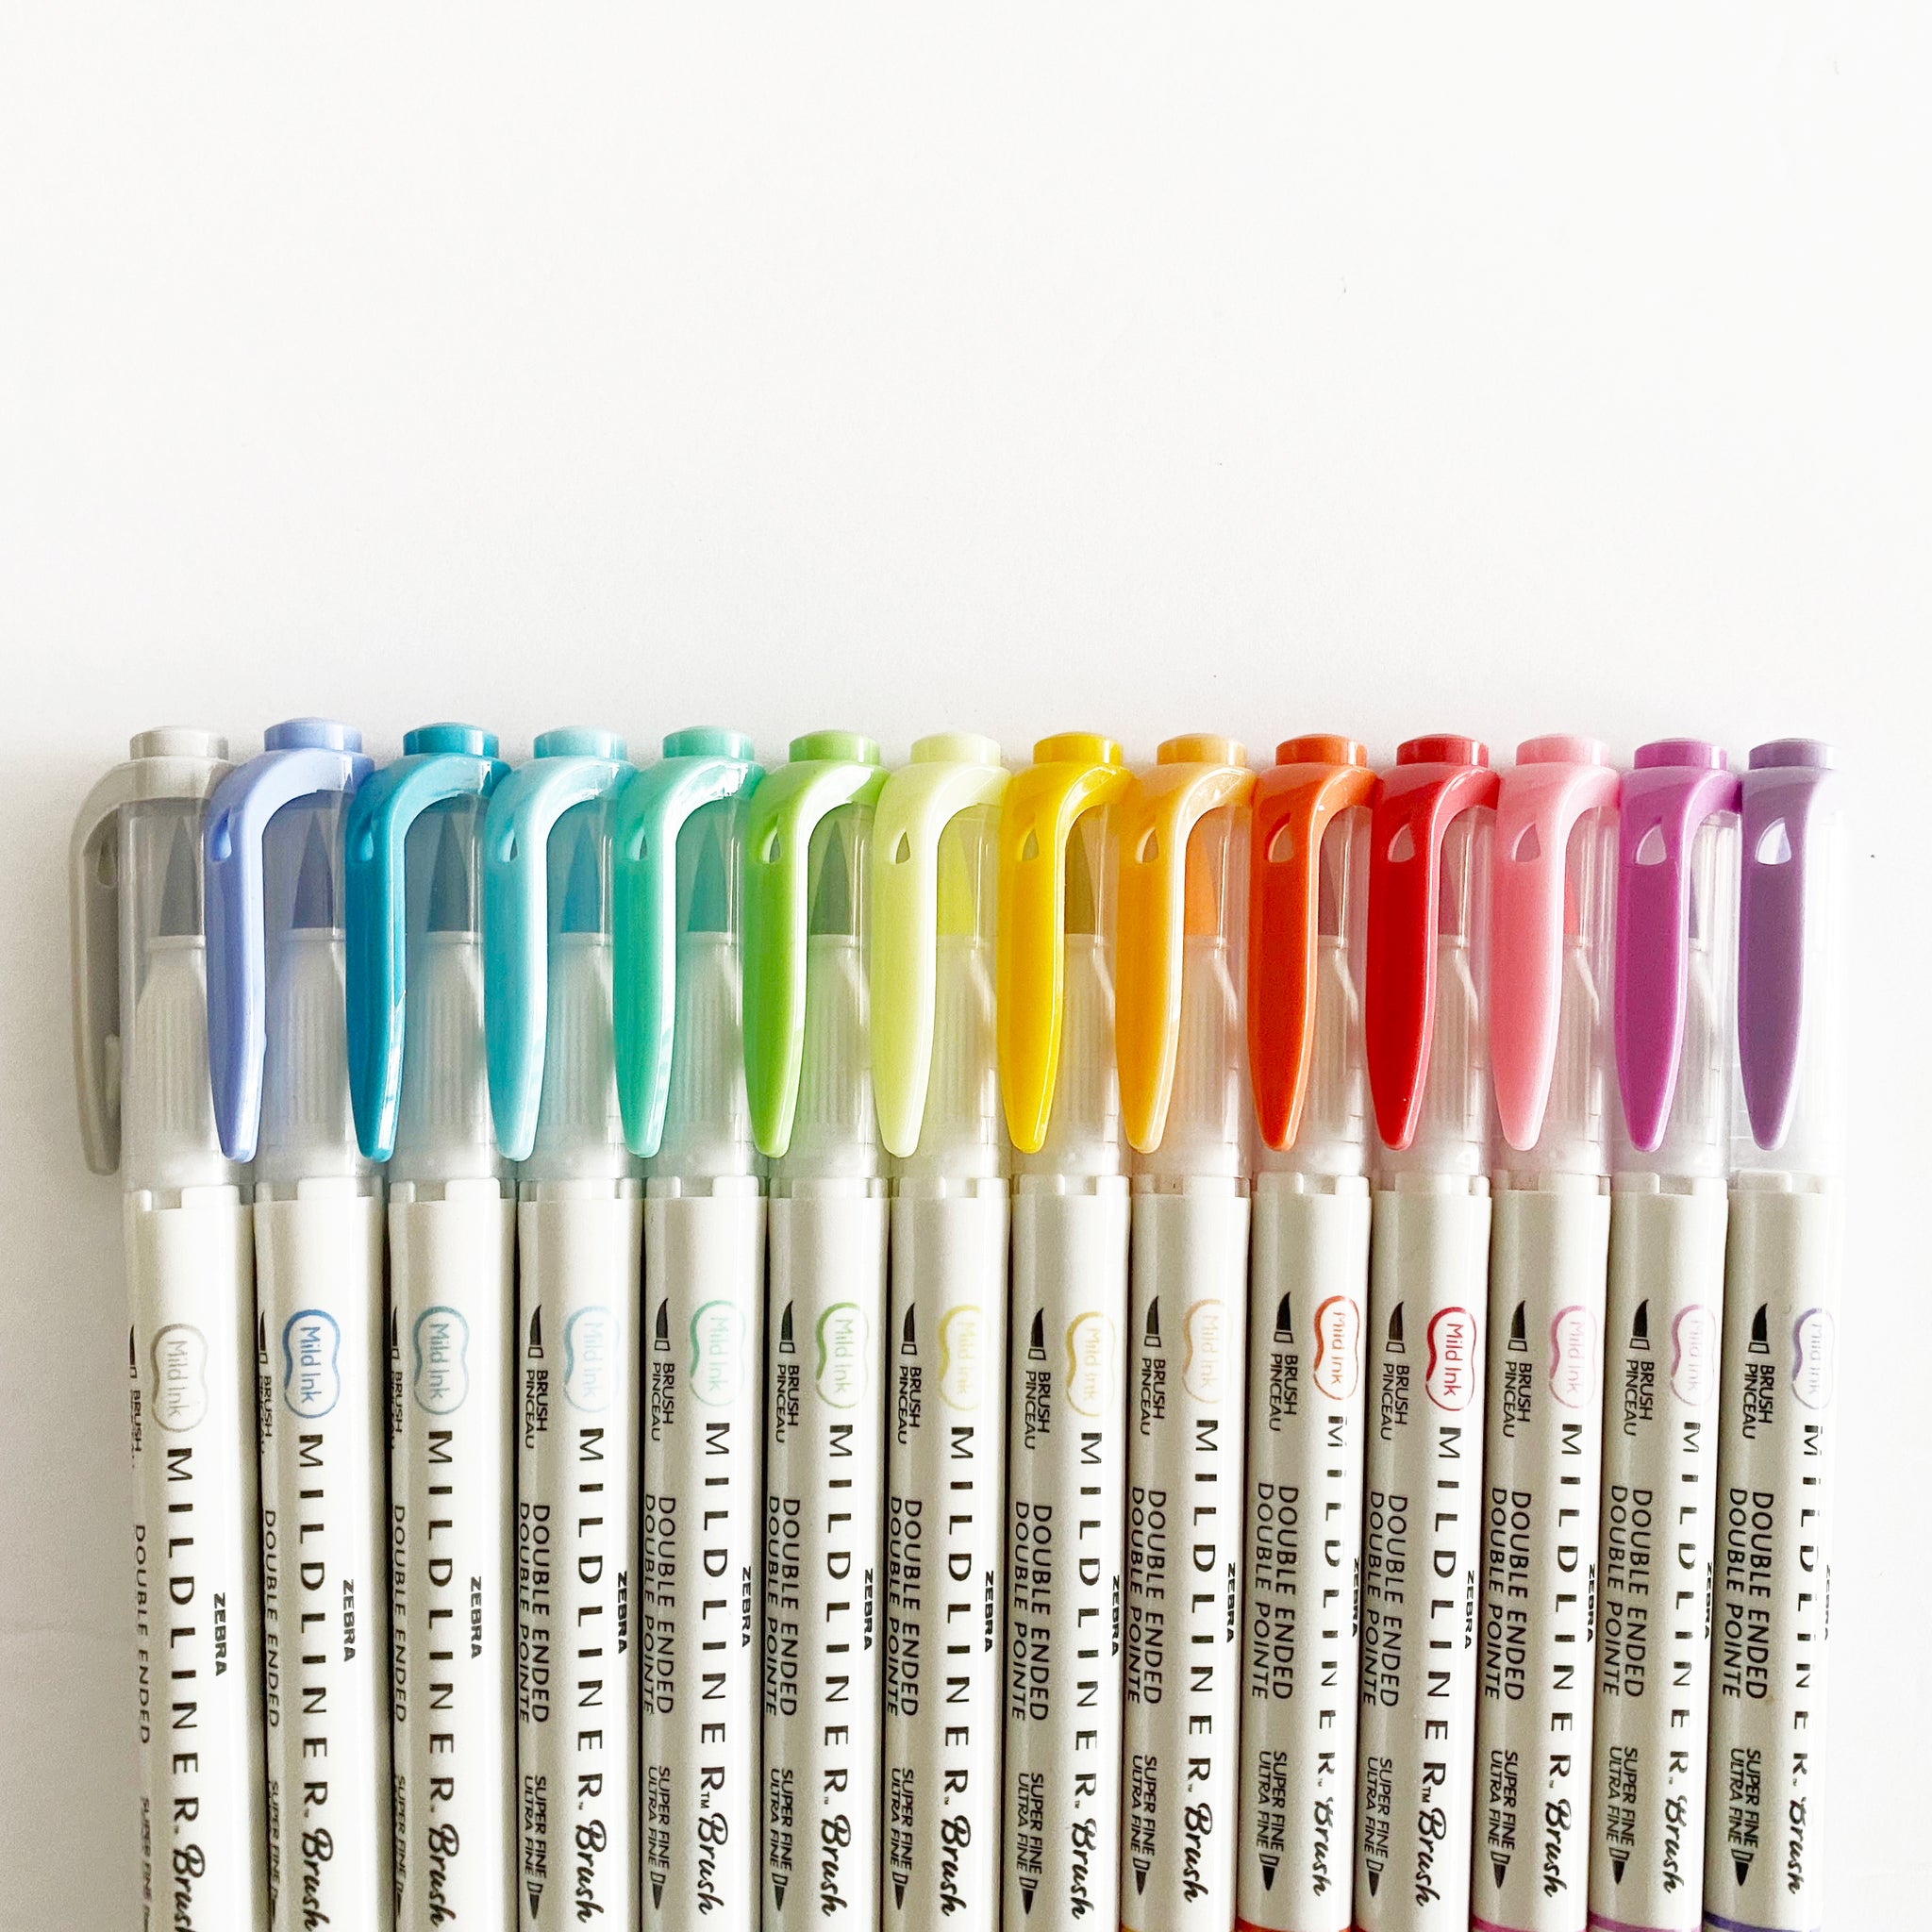 Zebra Mildliner Double Ended Brush Pen & Marker 15/Pkg-Assorted Colors -  045888791152